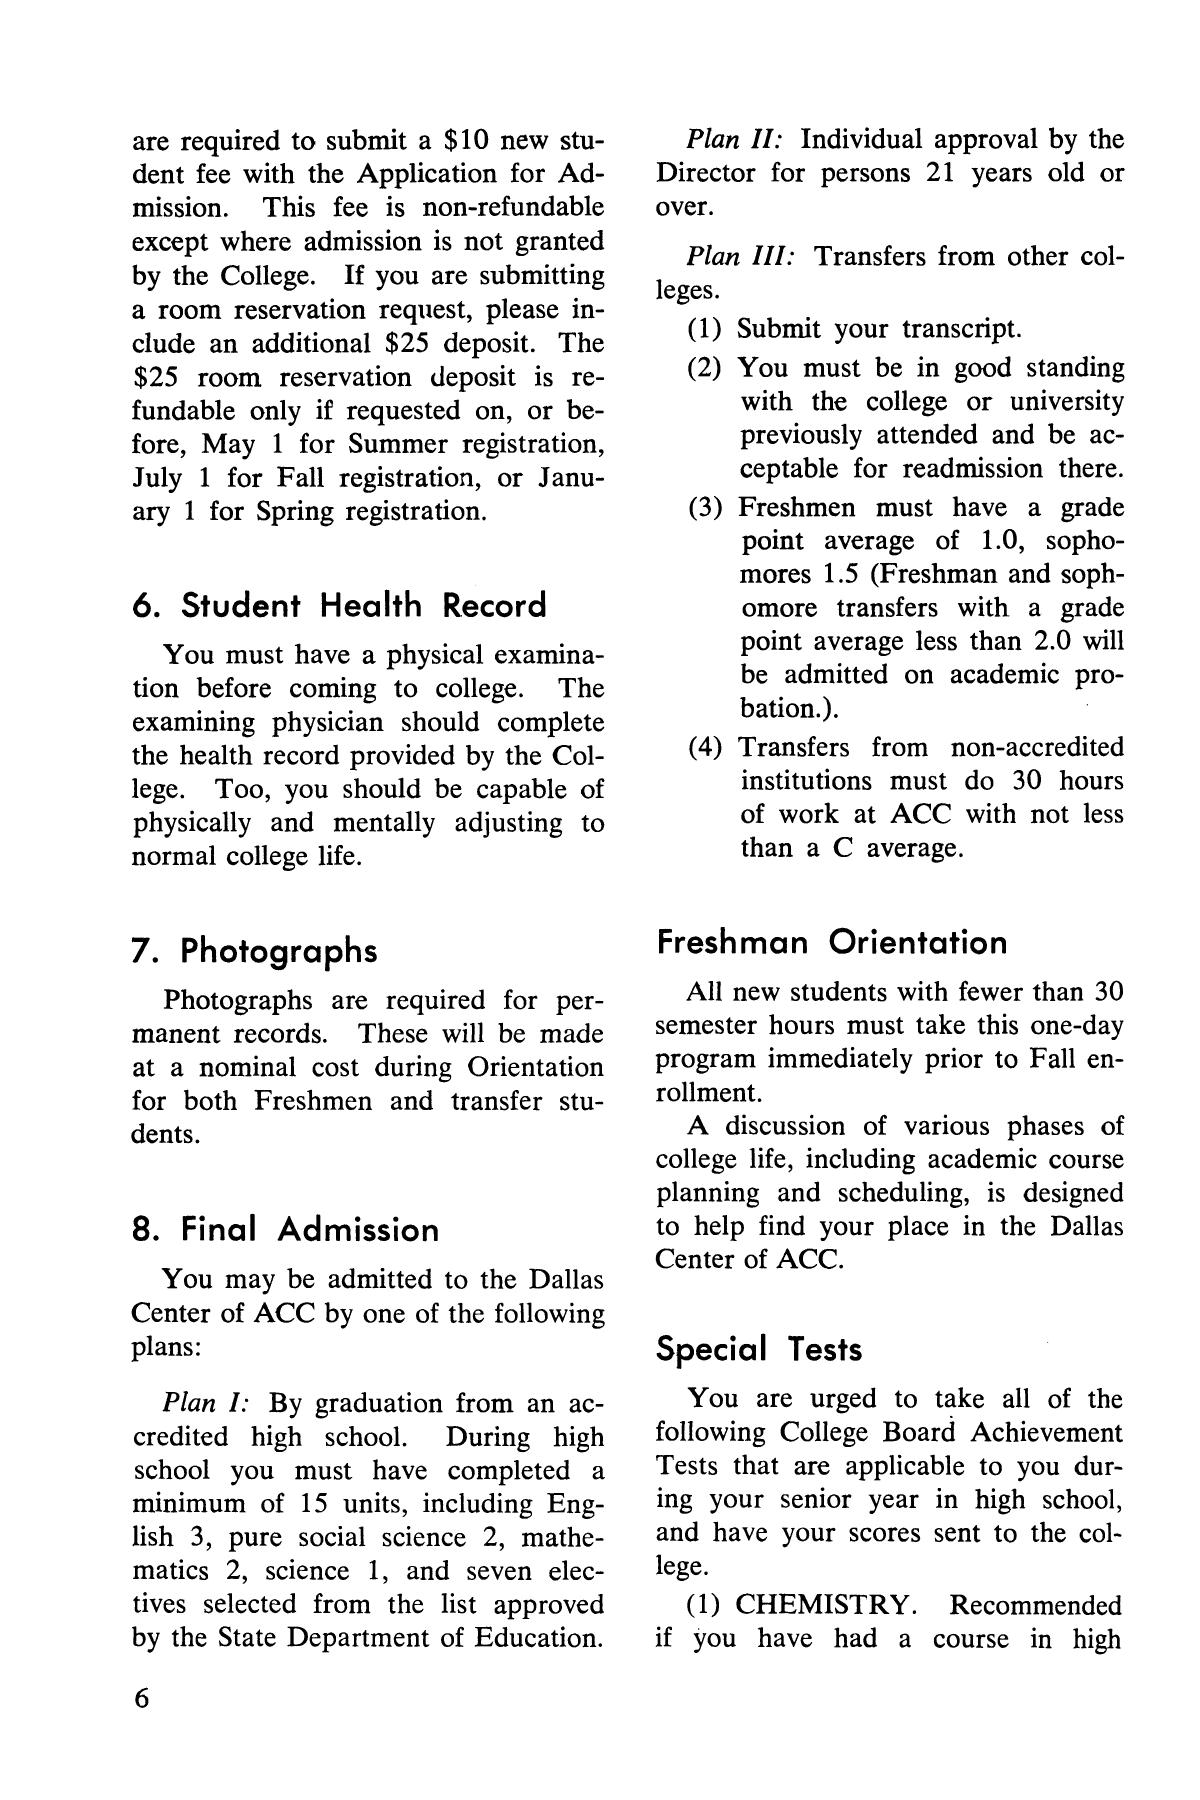 Catalog of Abilene Christian College, 1972-1973
                                                
                                                    6
                                                